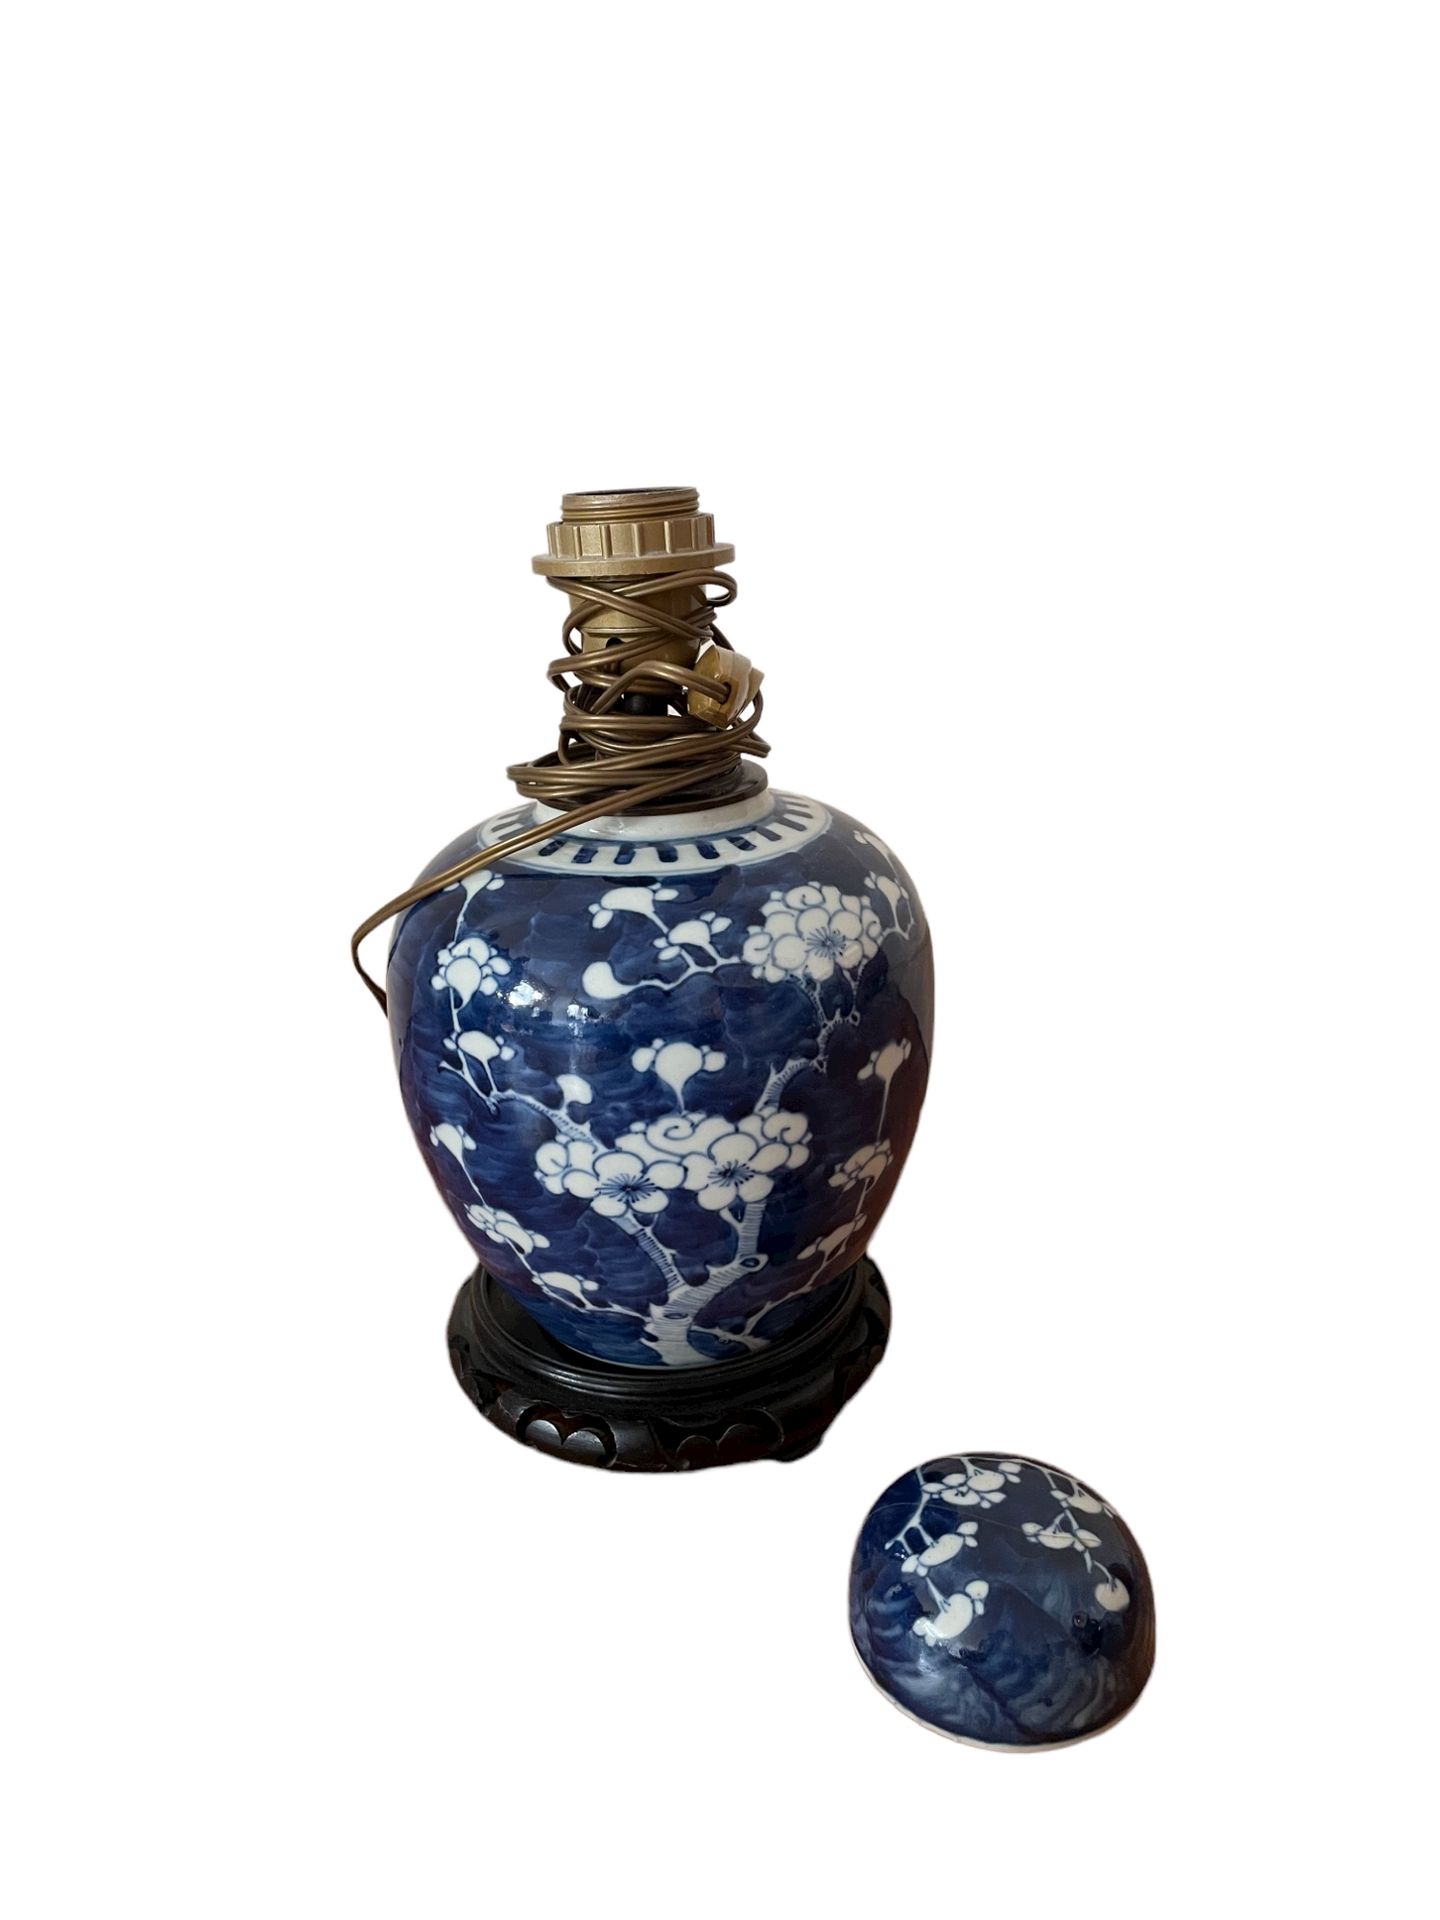 Null 中国

瓷器花瓶和盖子，釉下青花装饰

用双圆圈标记的

改编自一个灯座

高度：18厘米

盖子破了，又粘上了